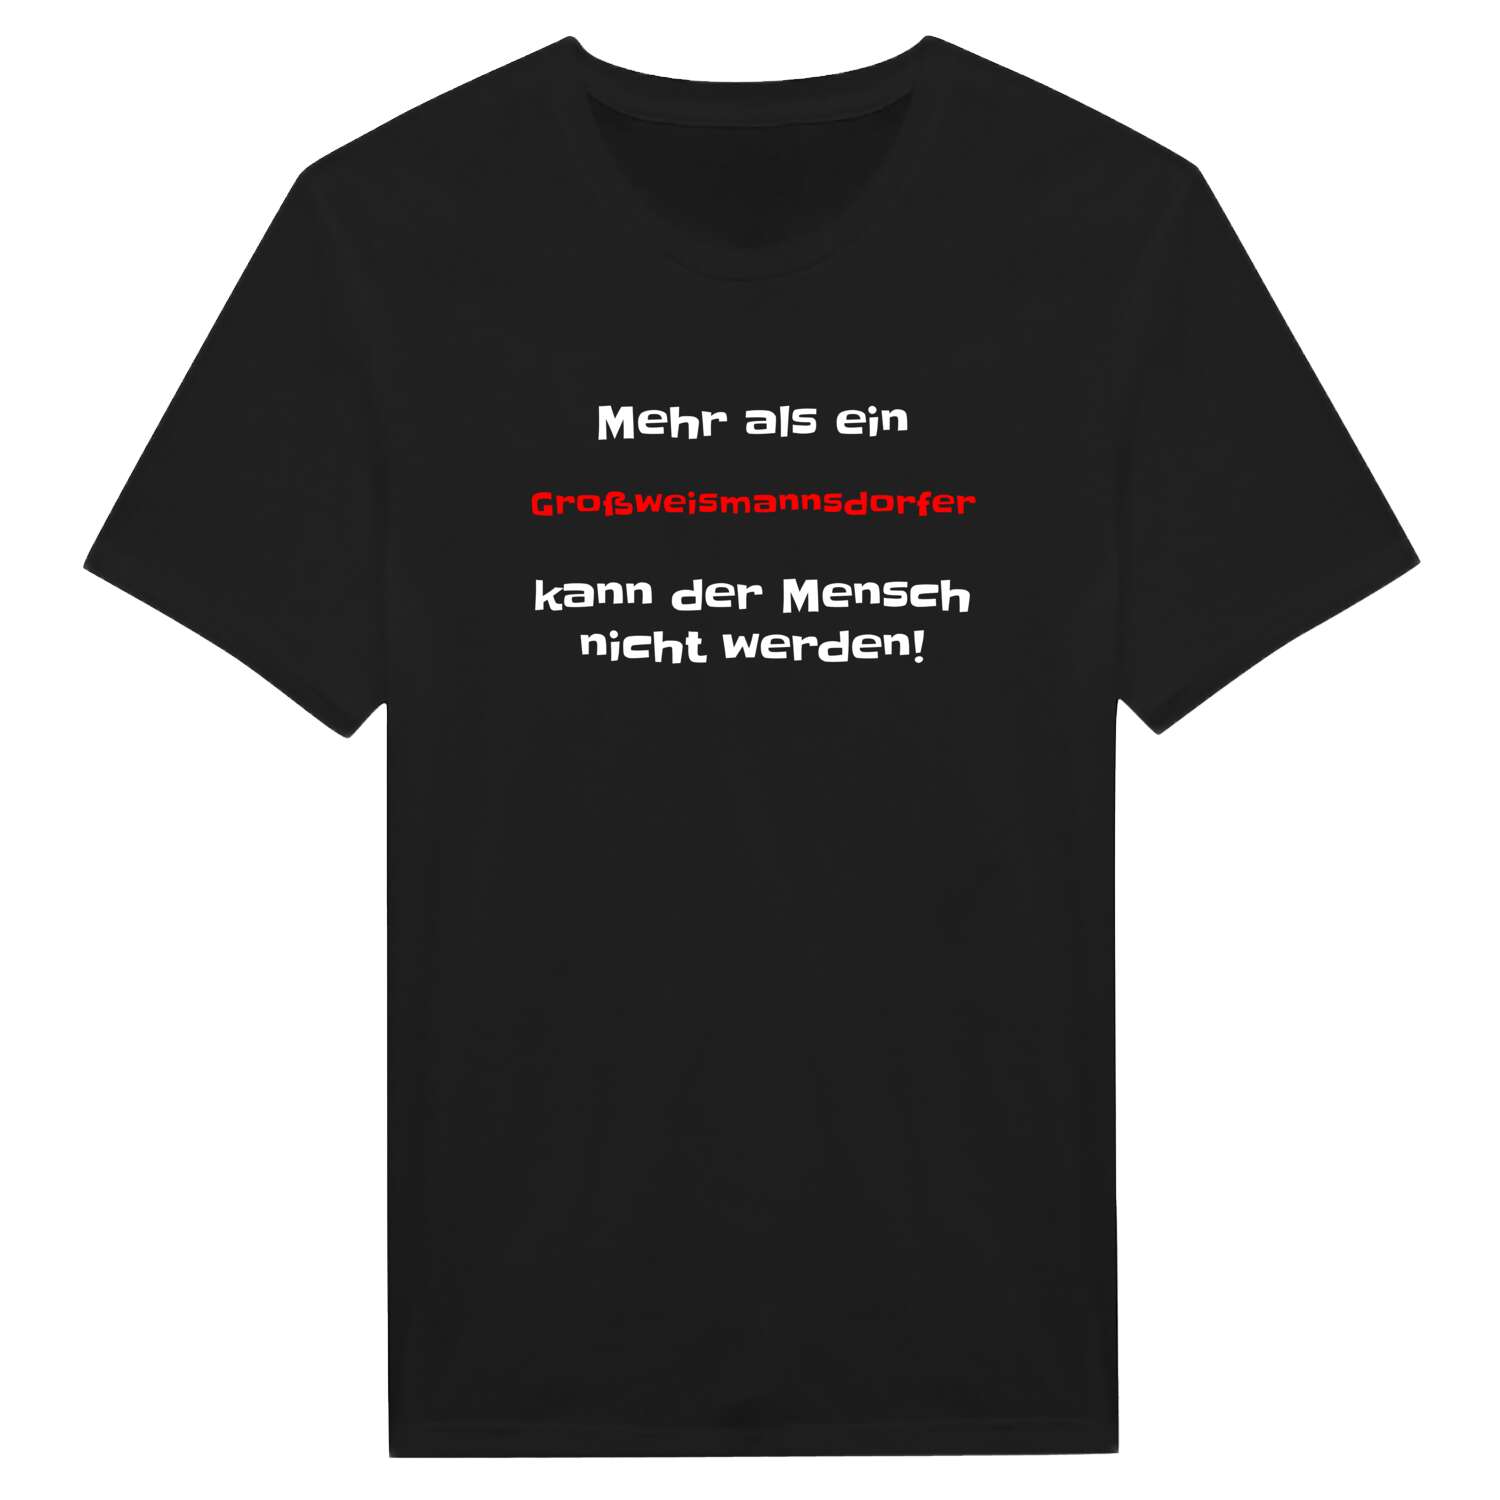 Großweismannsdorf T-Shirt »Mehr als ein«